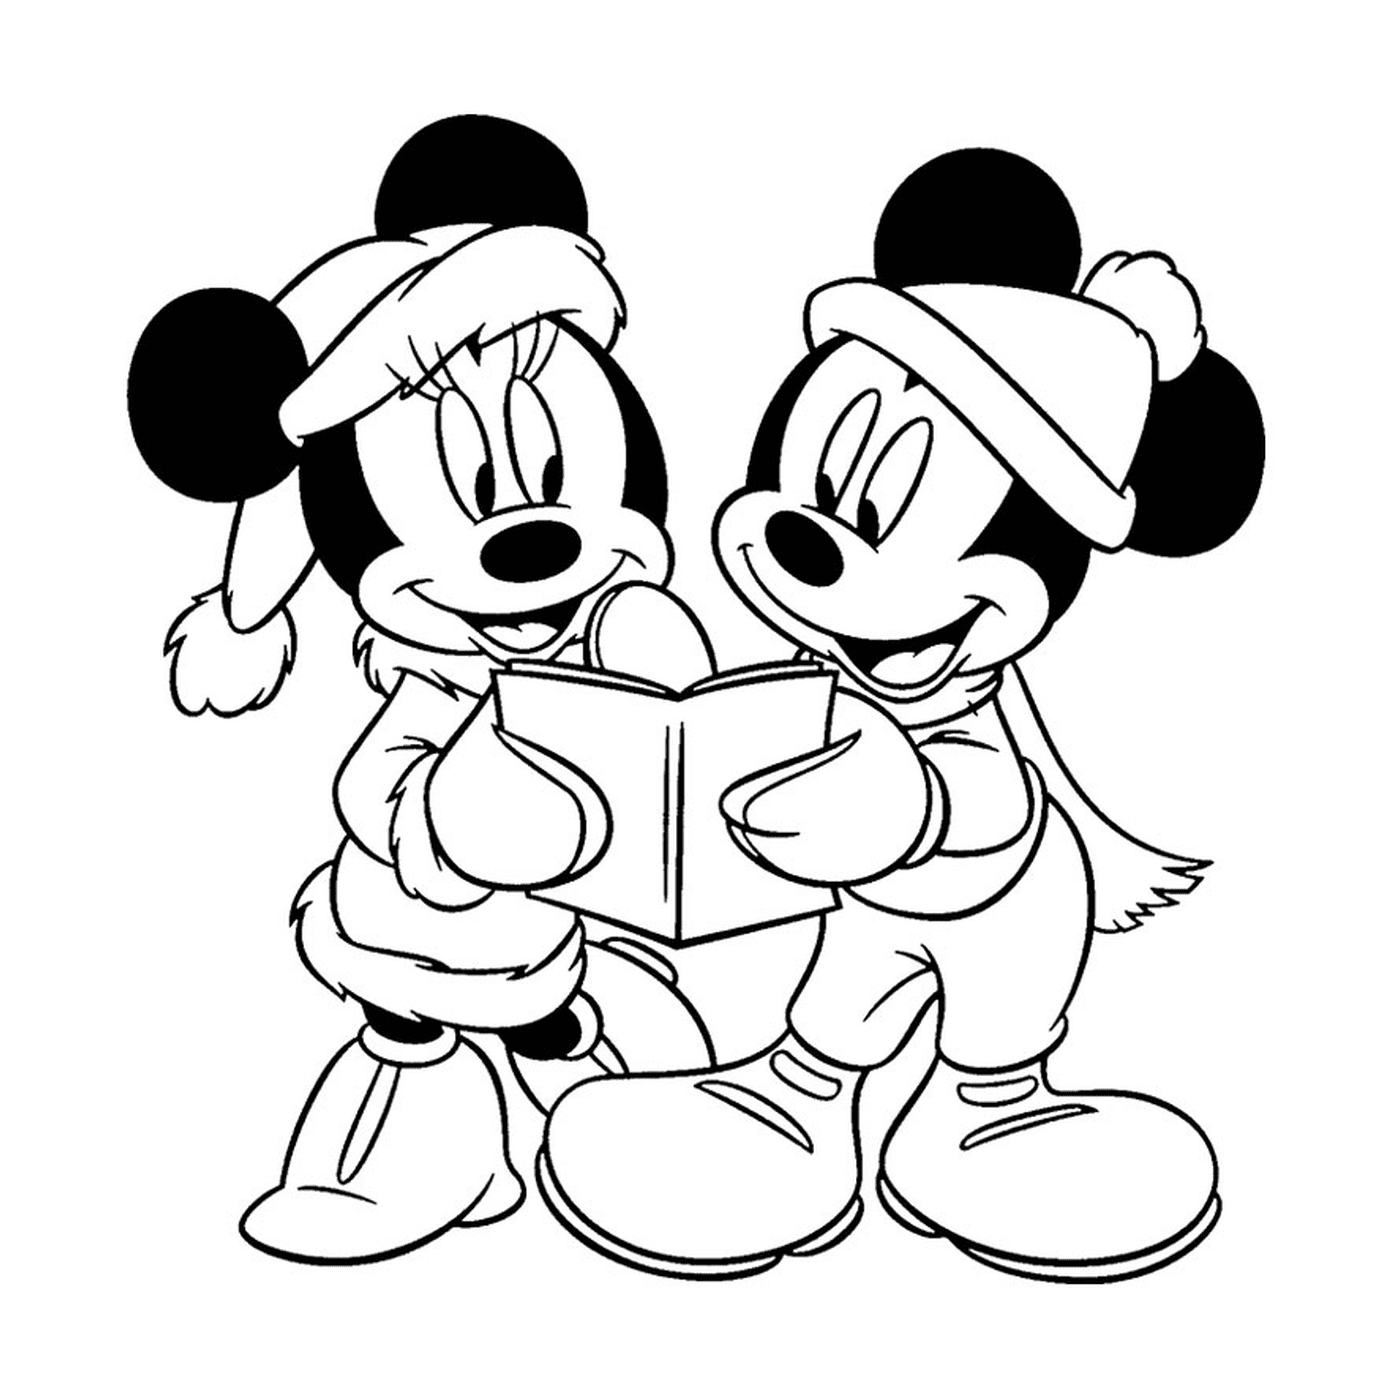   Mickey Mouse et Minnie Mouse lisent un livre ensemble 